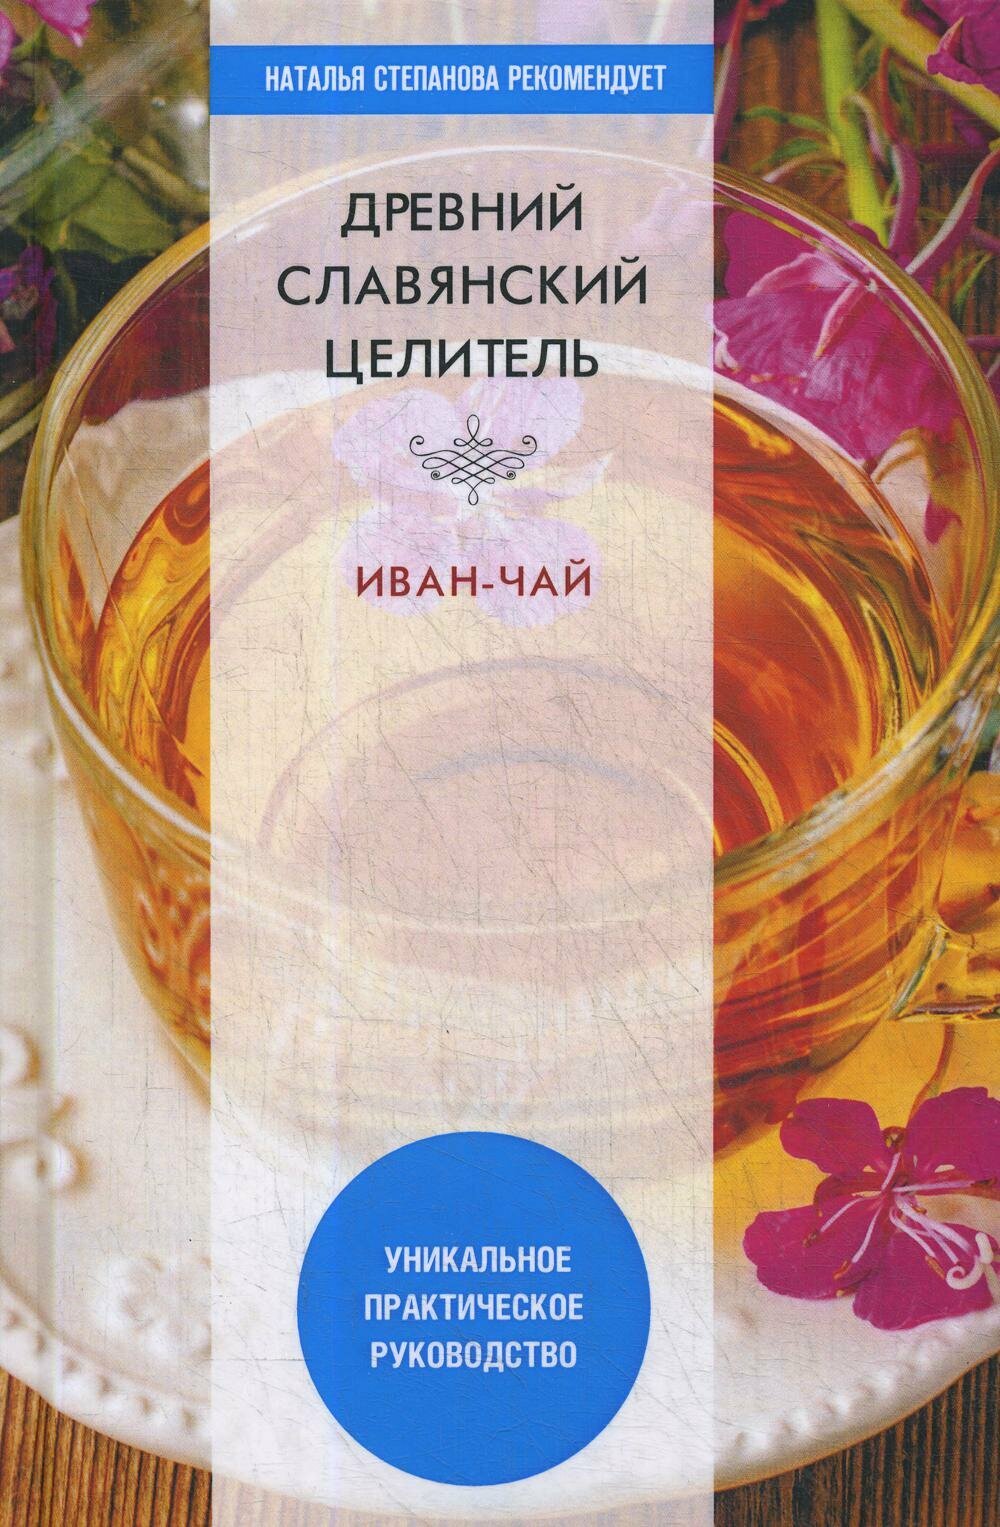 Древний славянский целитель иван-чай. Уникальное практическое руководство - фото №2